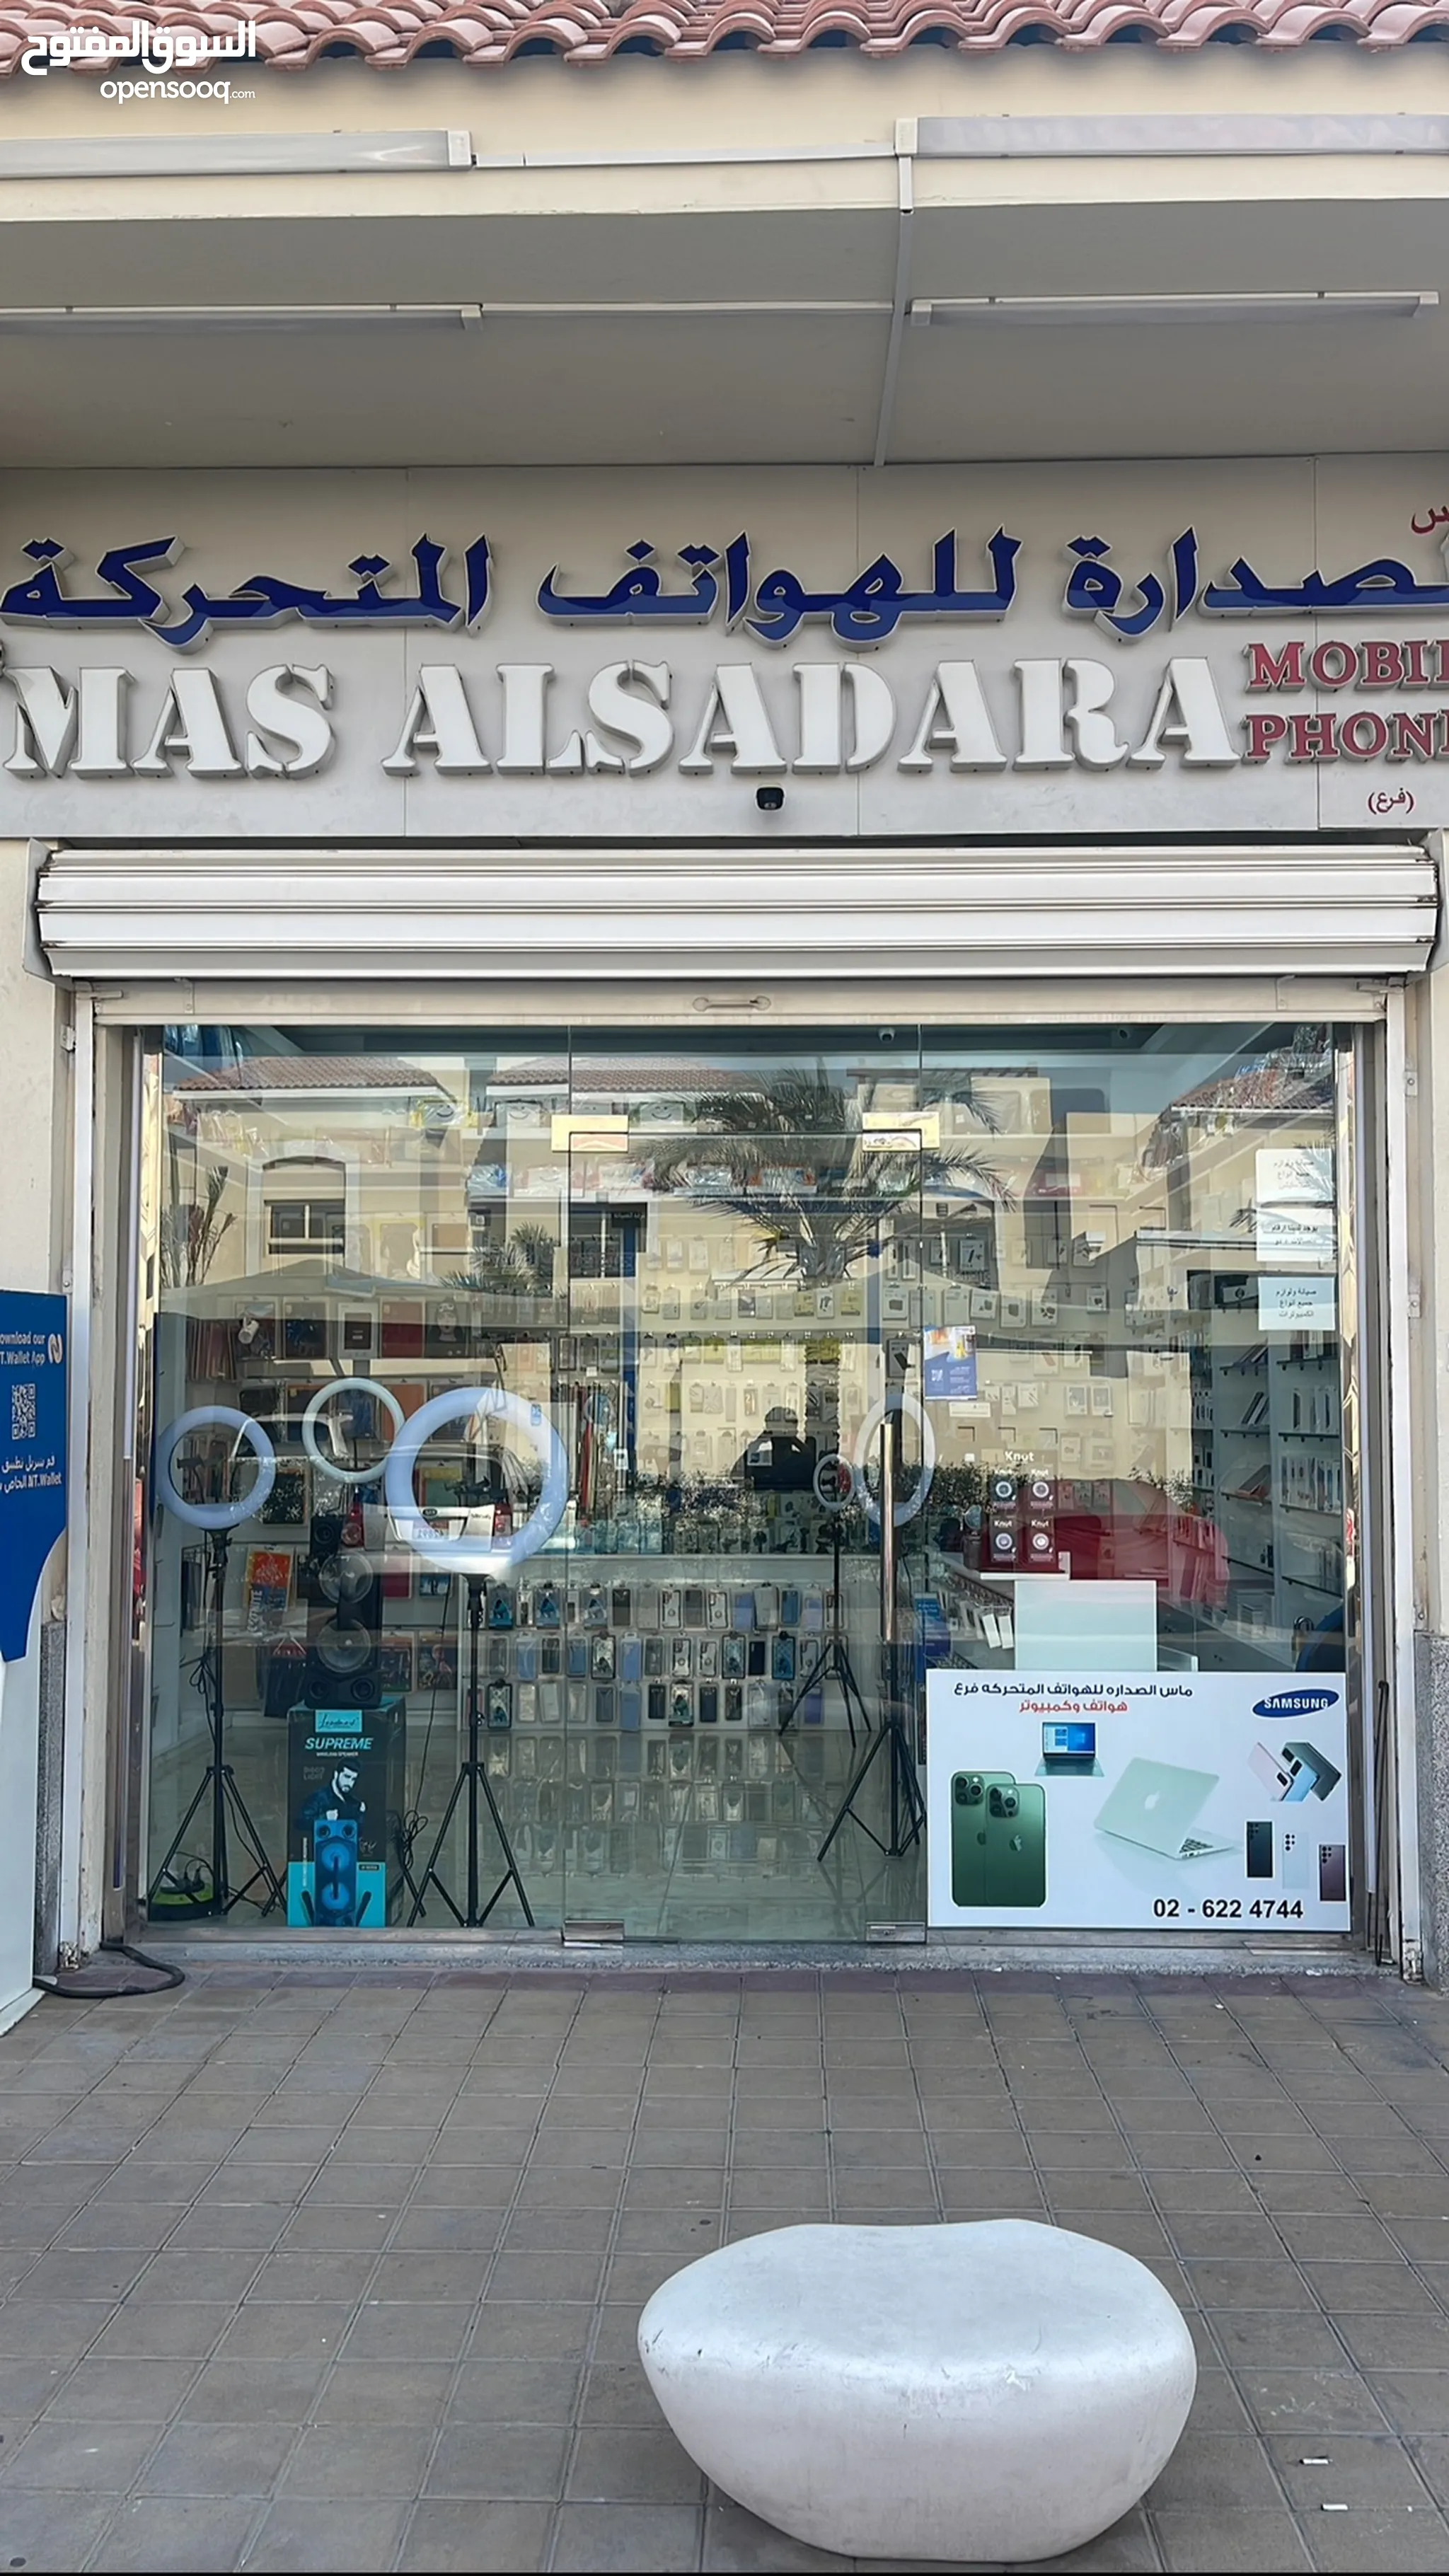 عقارات تجارية محل للبيع في أبو ظبي | السوق المفتوح